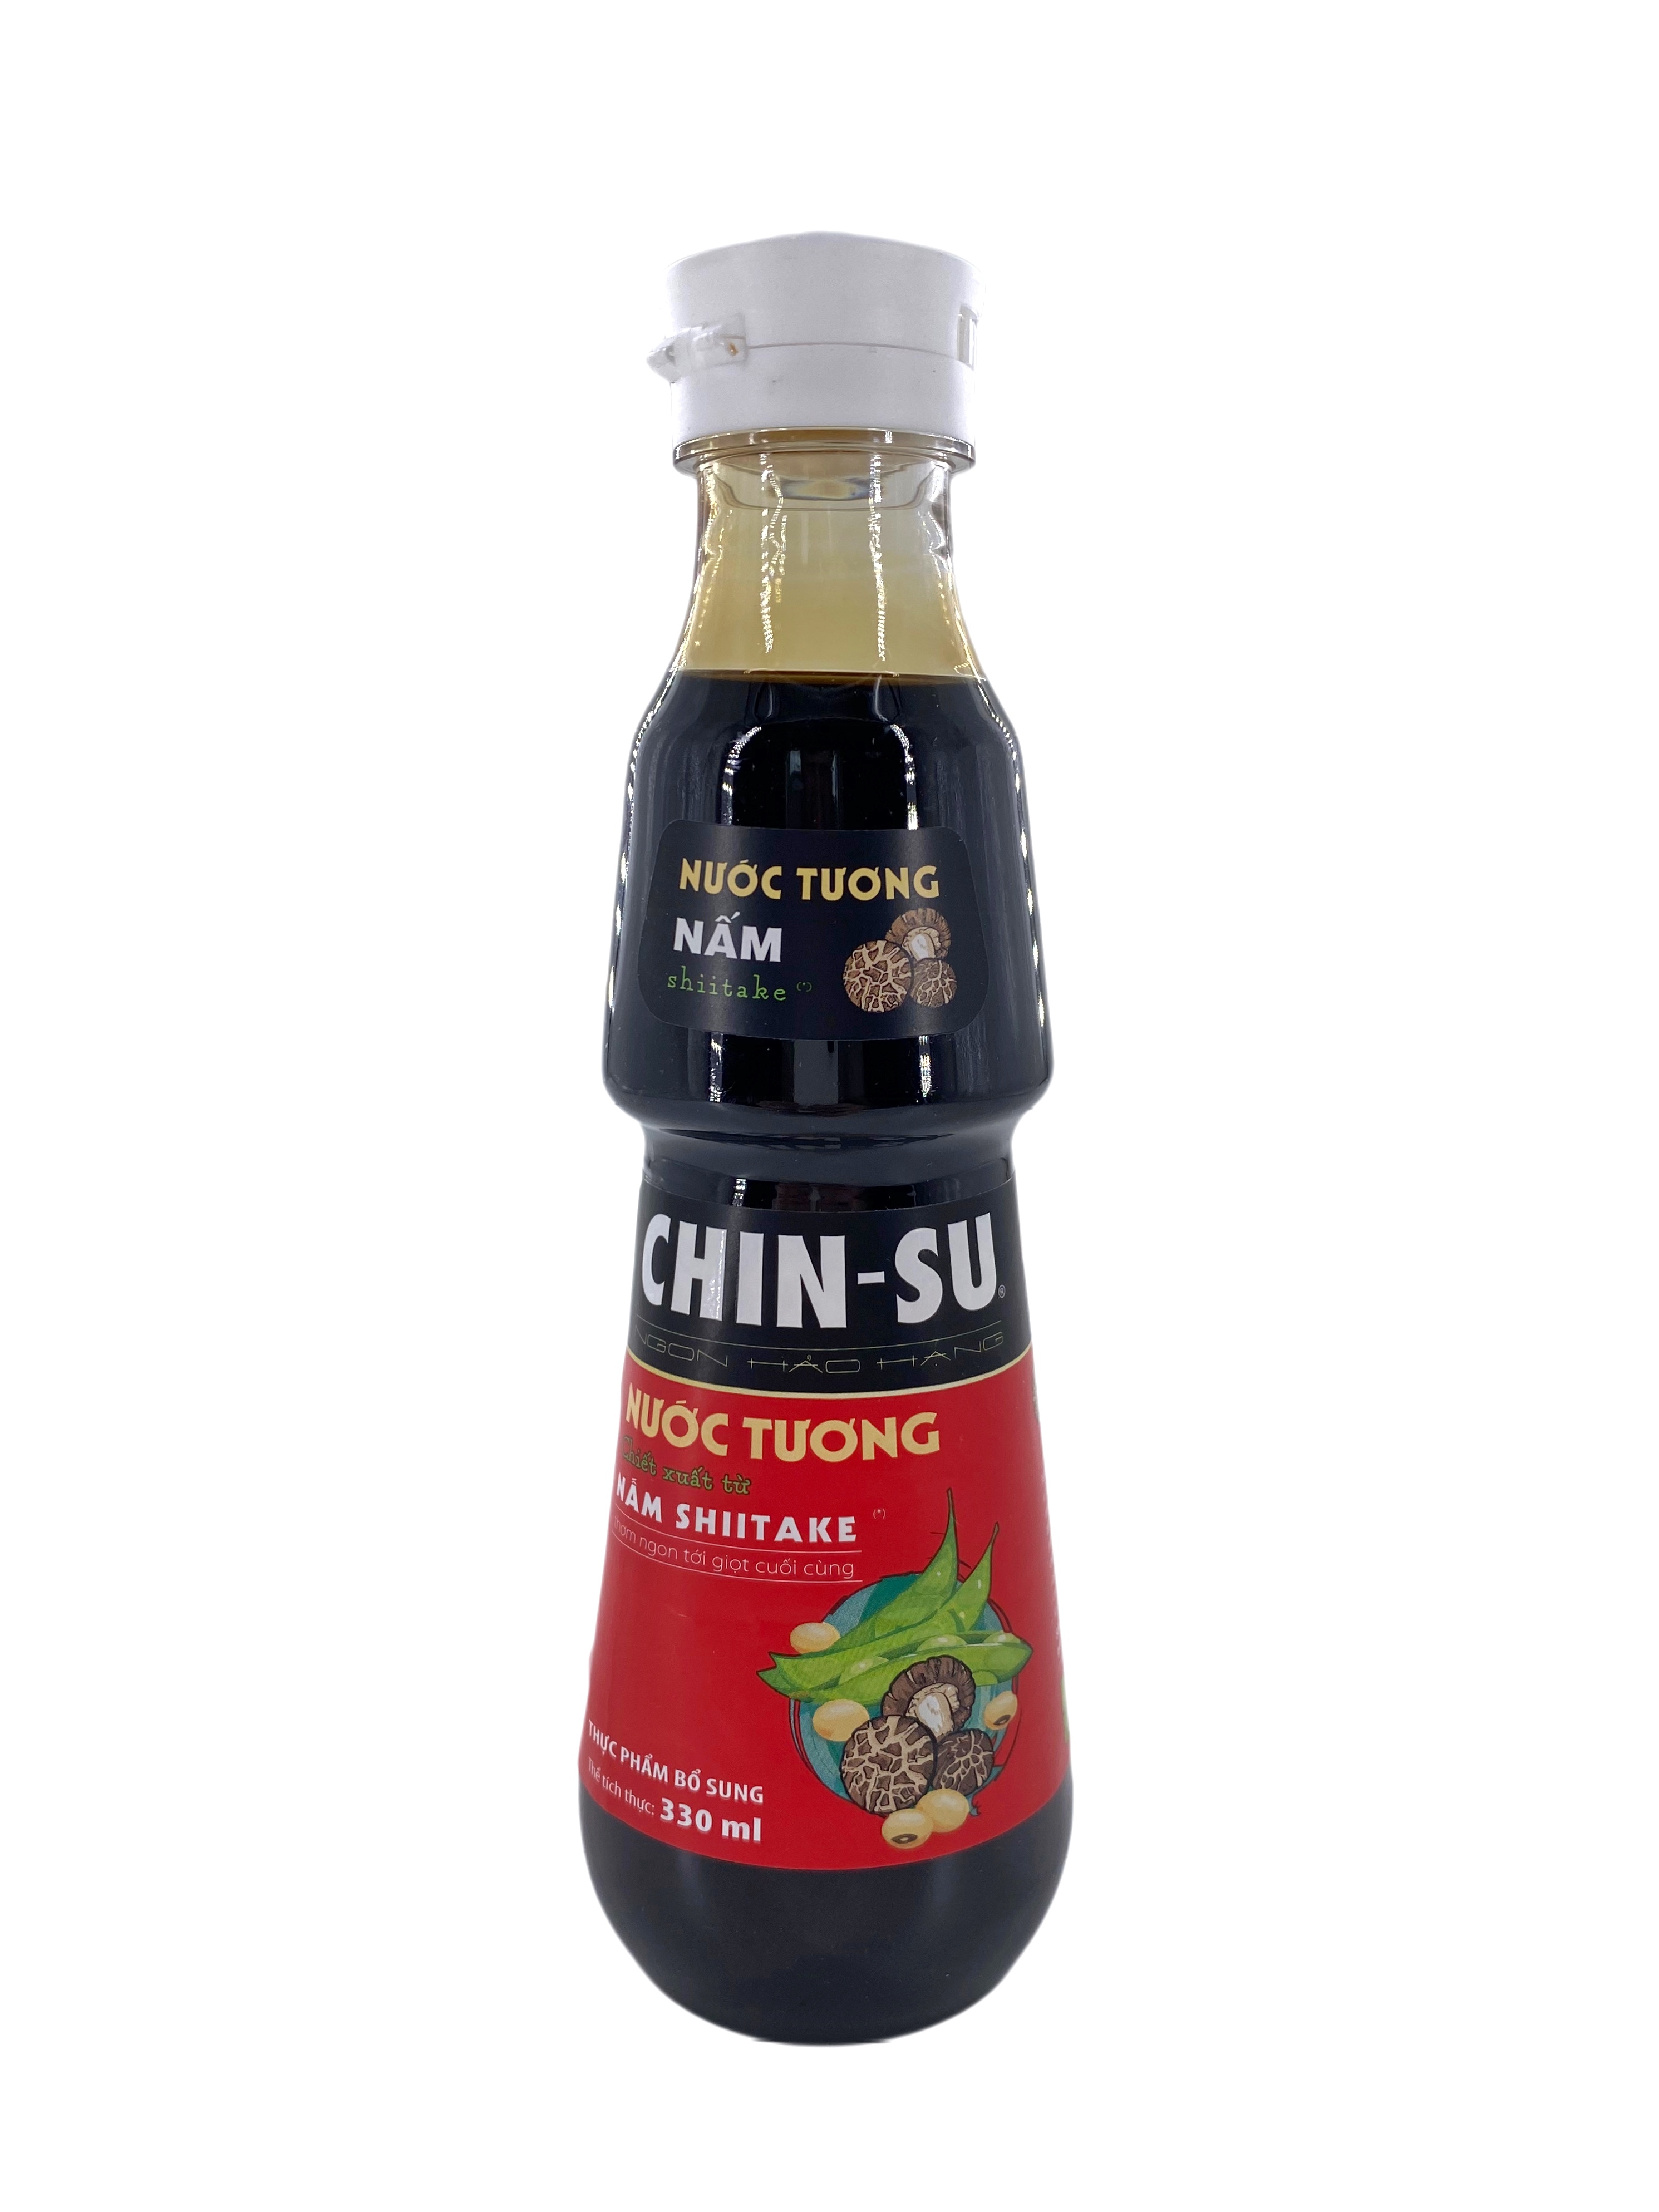 Вьетнамский Соевый соус CHIN-SU с грибами шиитаки, 330 мл